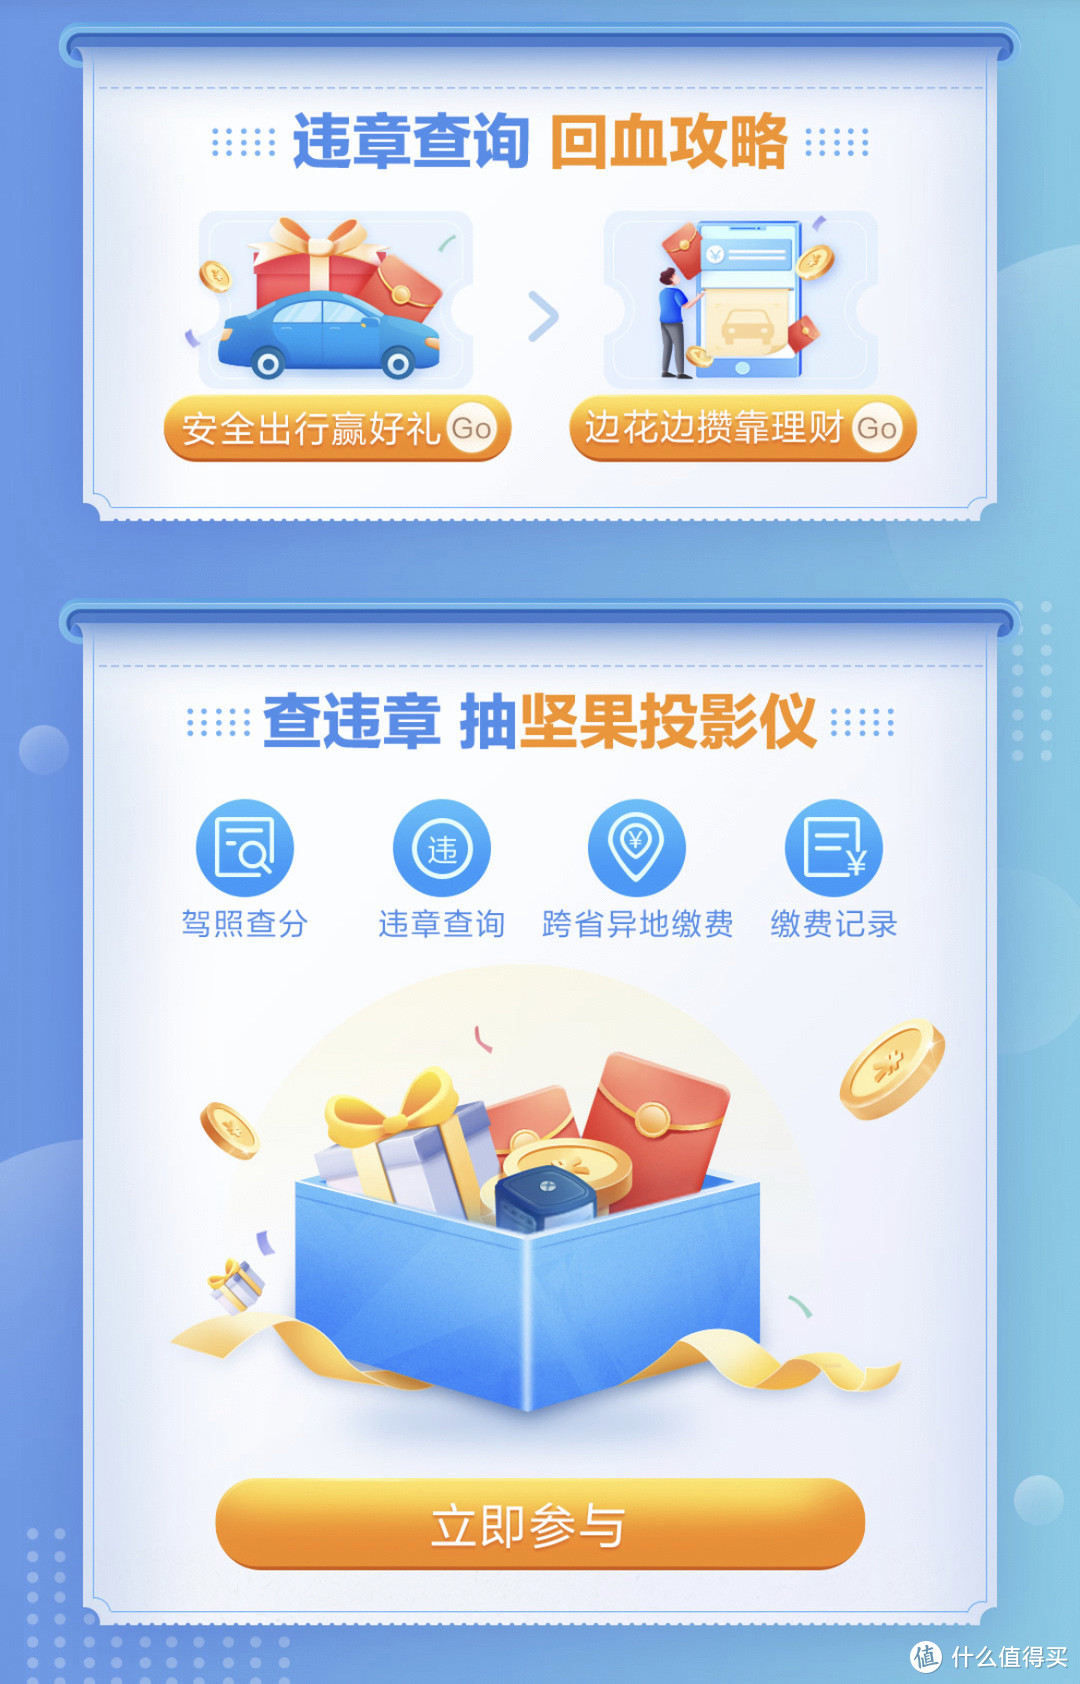 7月招商银行App 27项现金红包 +优惠大全【高能福利预告】